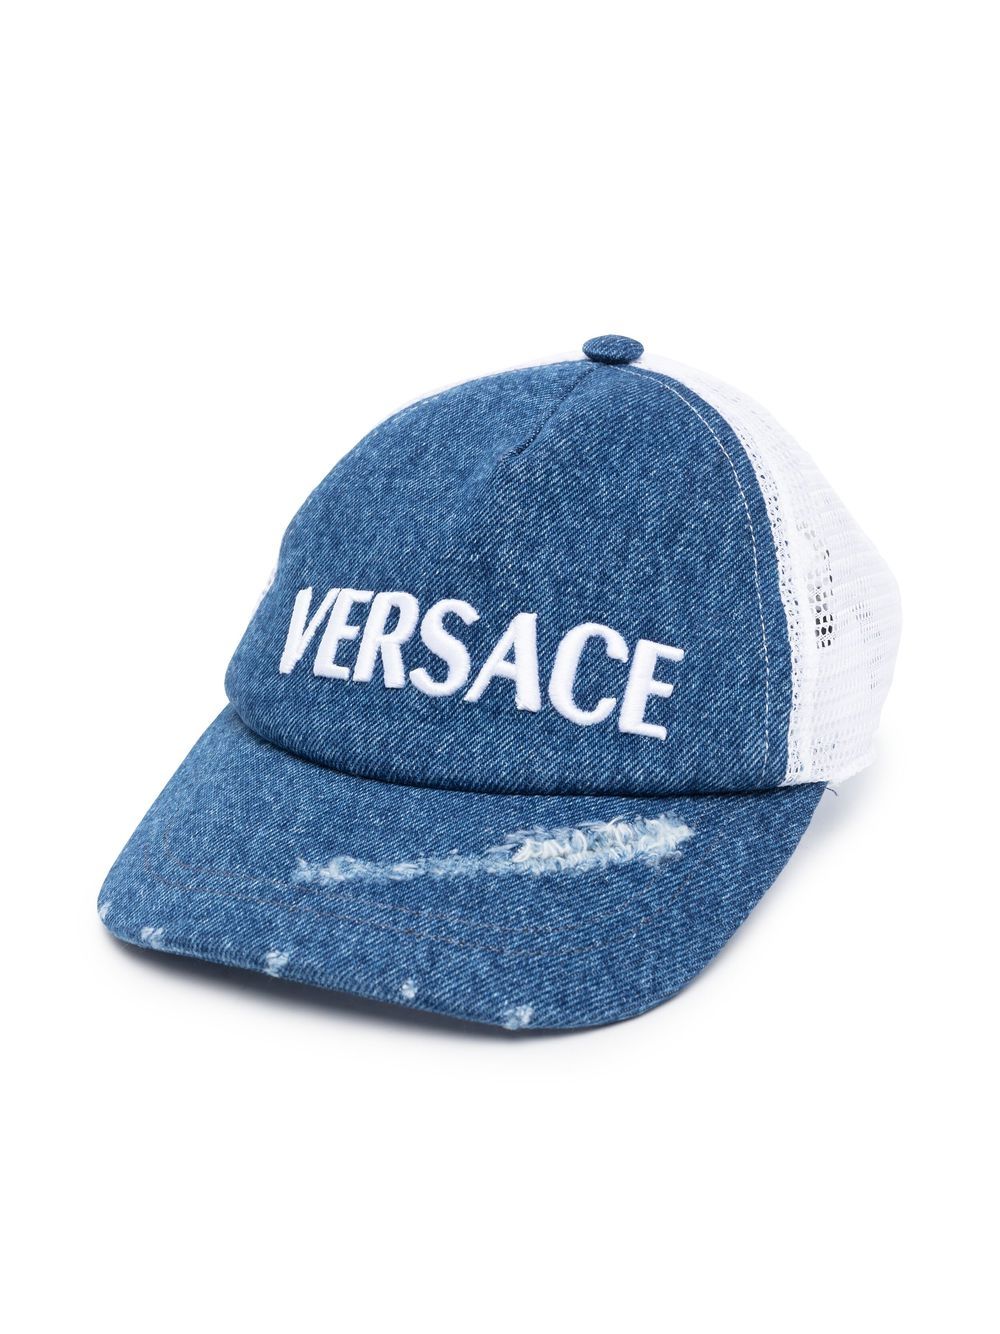 Versace Kids distressed denim baseball cap - Blue von Versace Kids